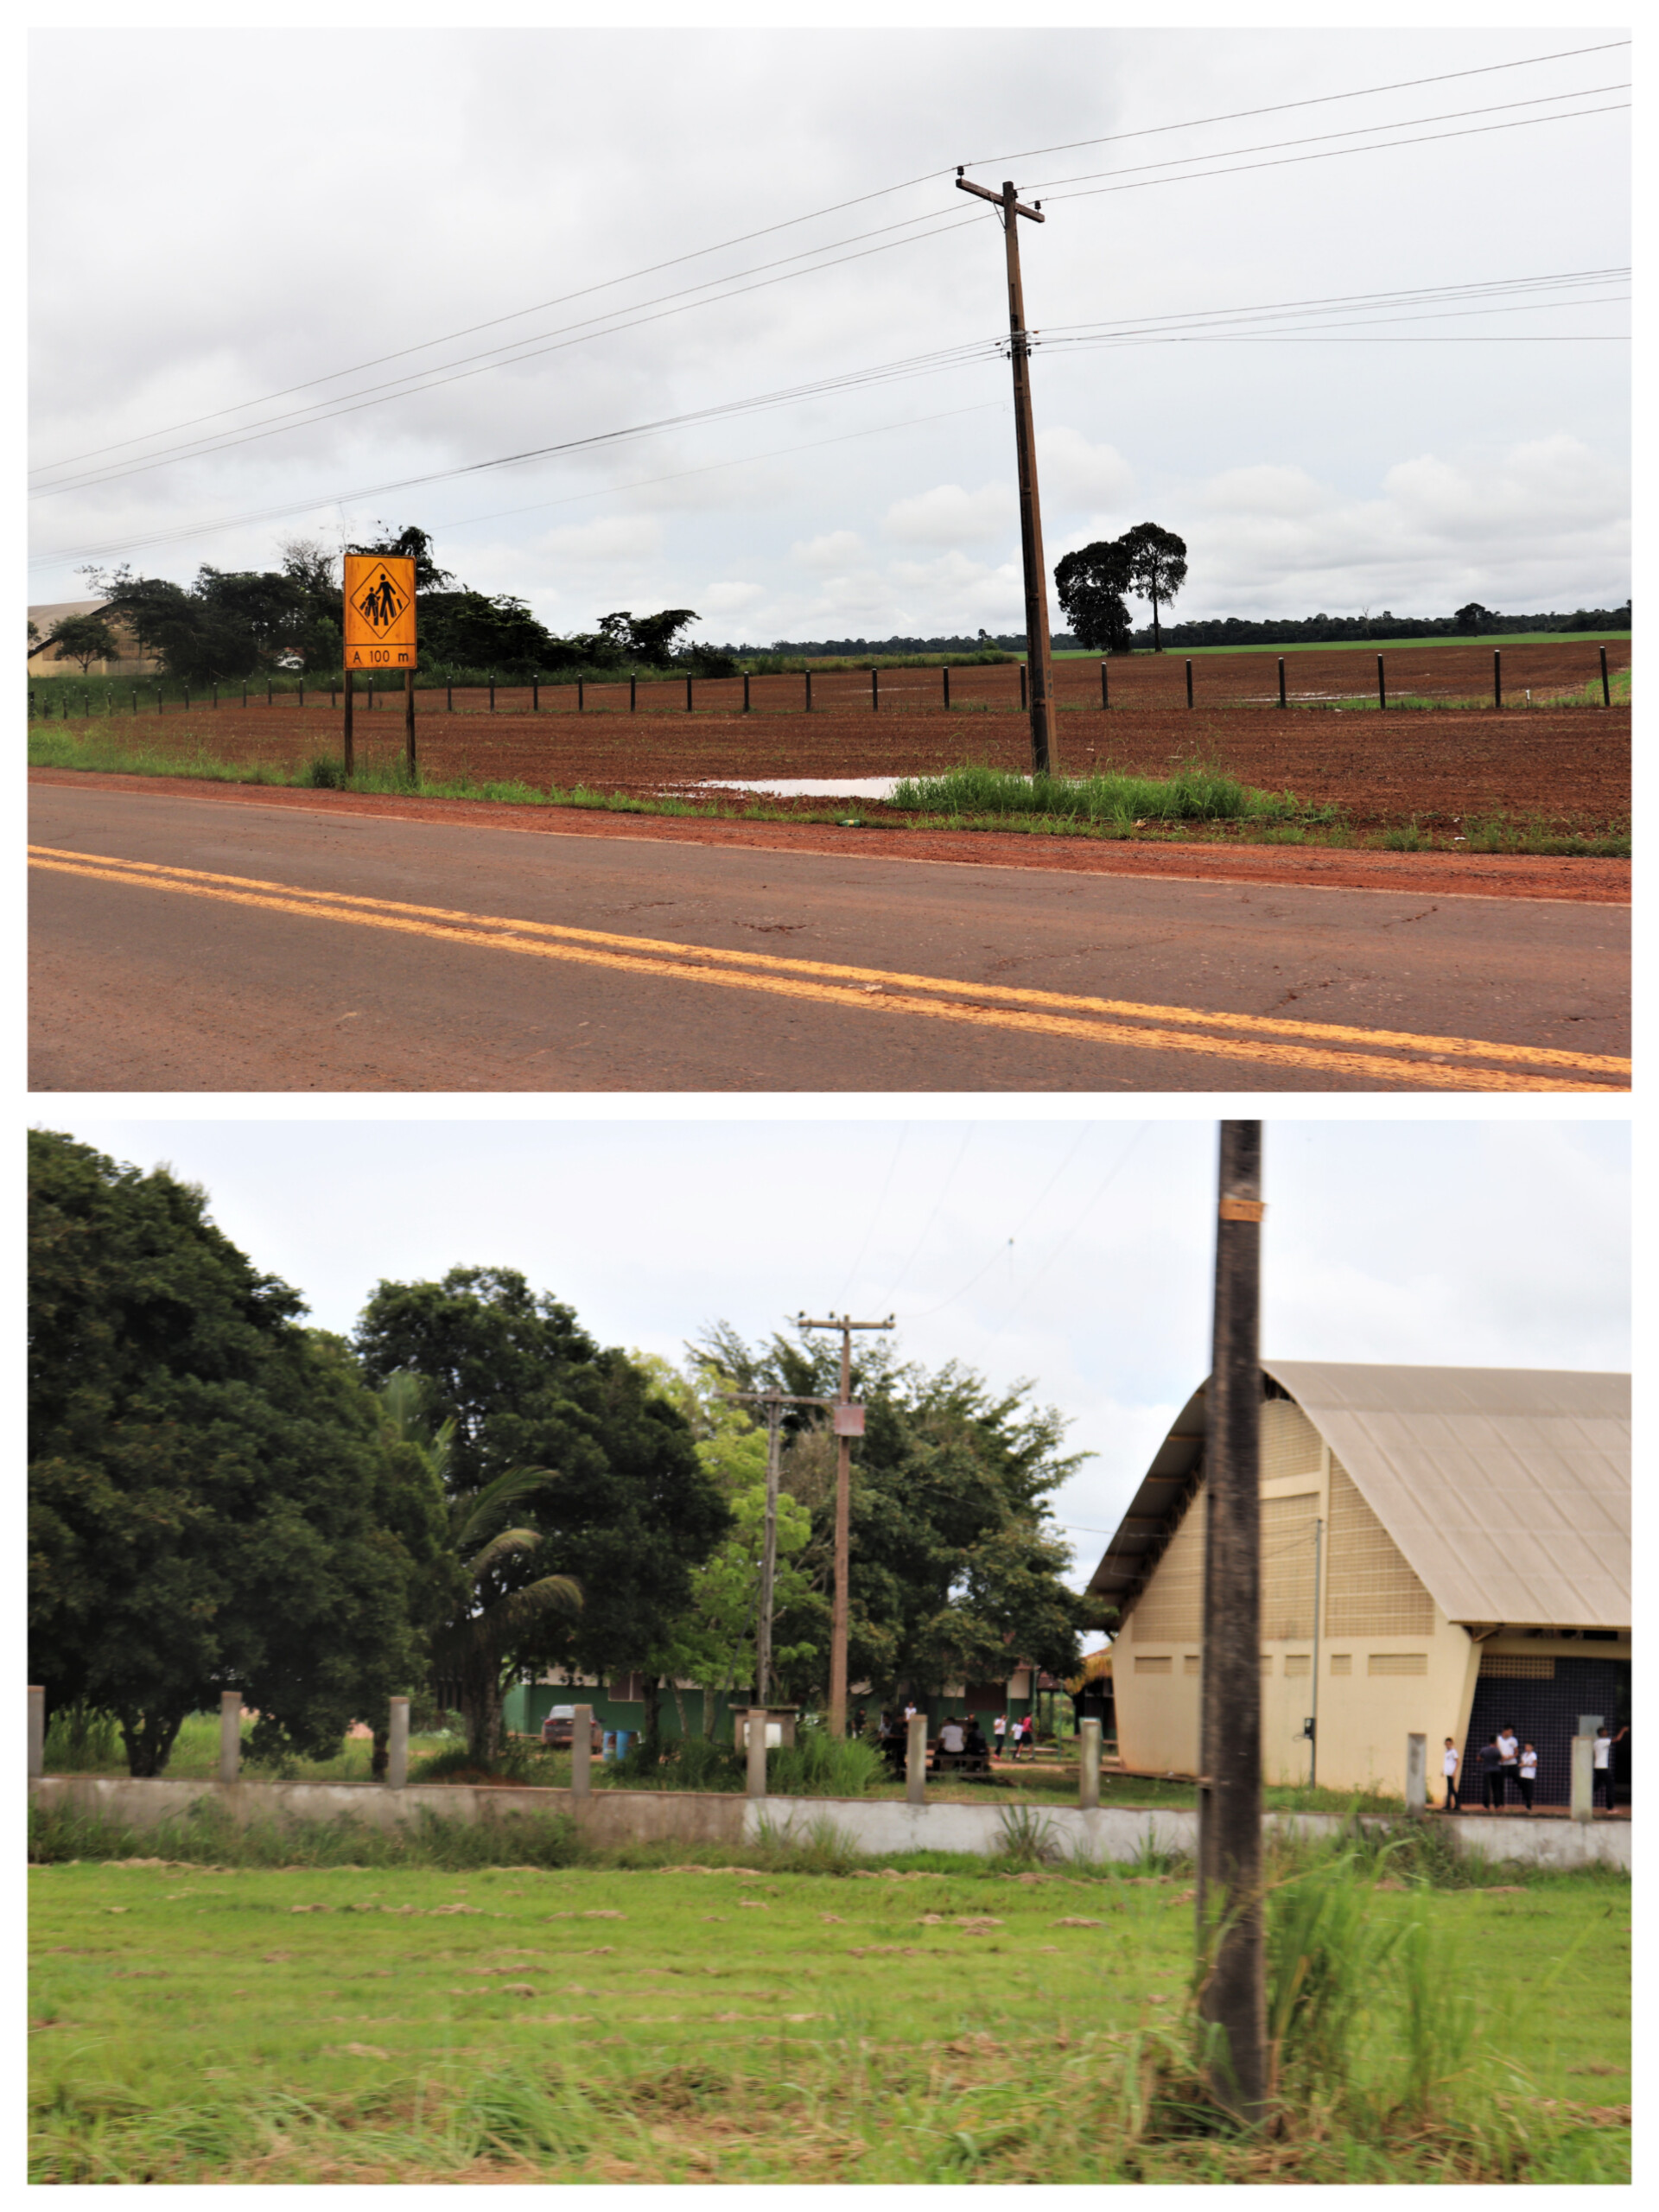  Foi constato pelo CNDH que a plantação fica a menos de 100m da escola, como indica placa de sinalização. Foto: Lanna Ramos 